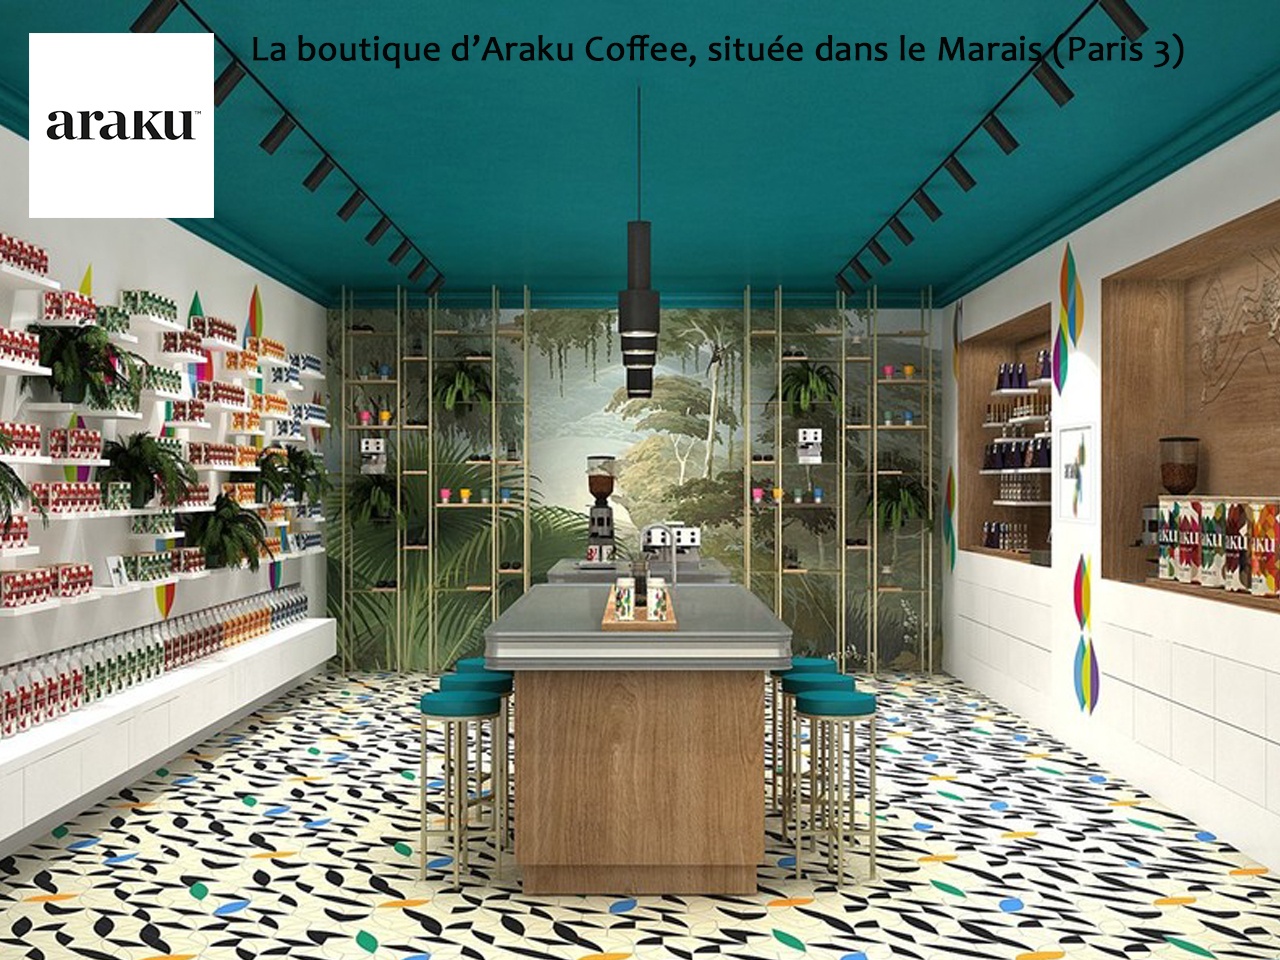 Araku Coffee mise sur l’économie positive